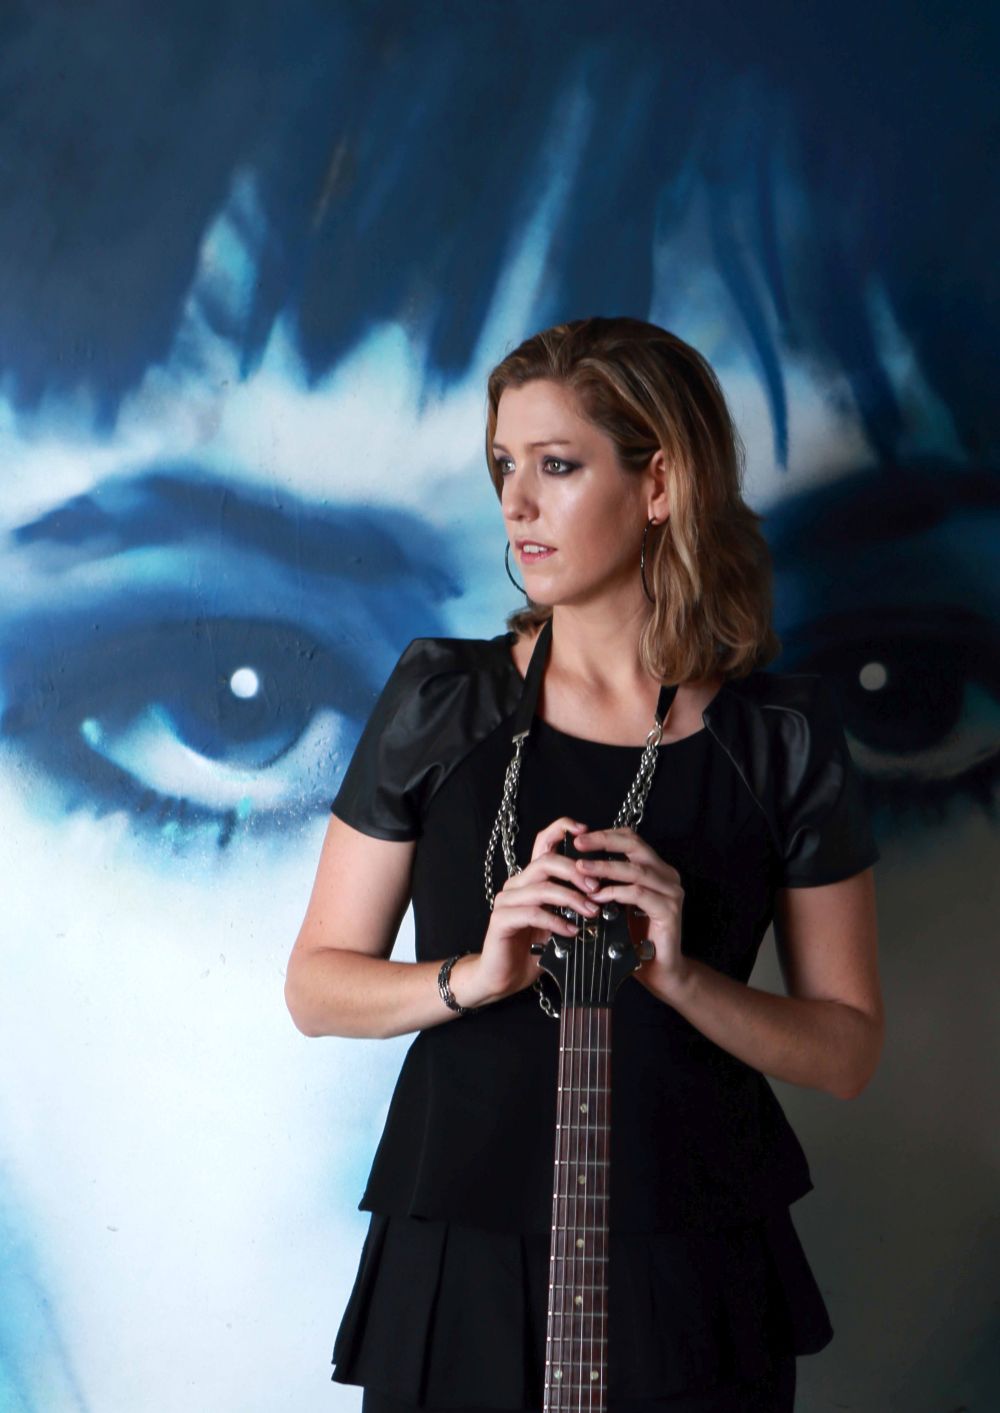 Die australische Musikerin Lecia Louise tritt am 10. April 2017 im Filou in Steinhude auf